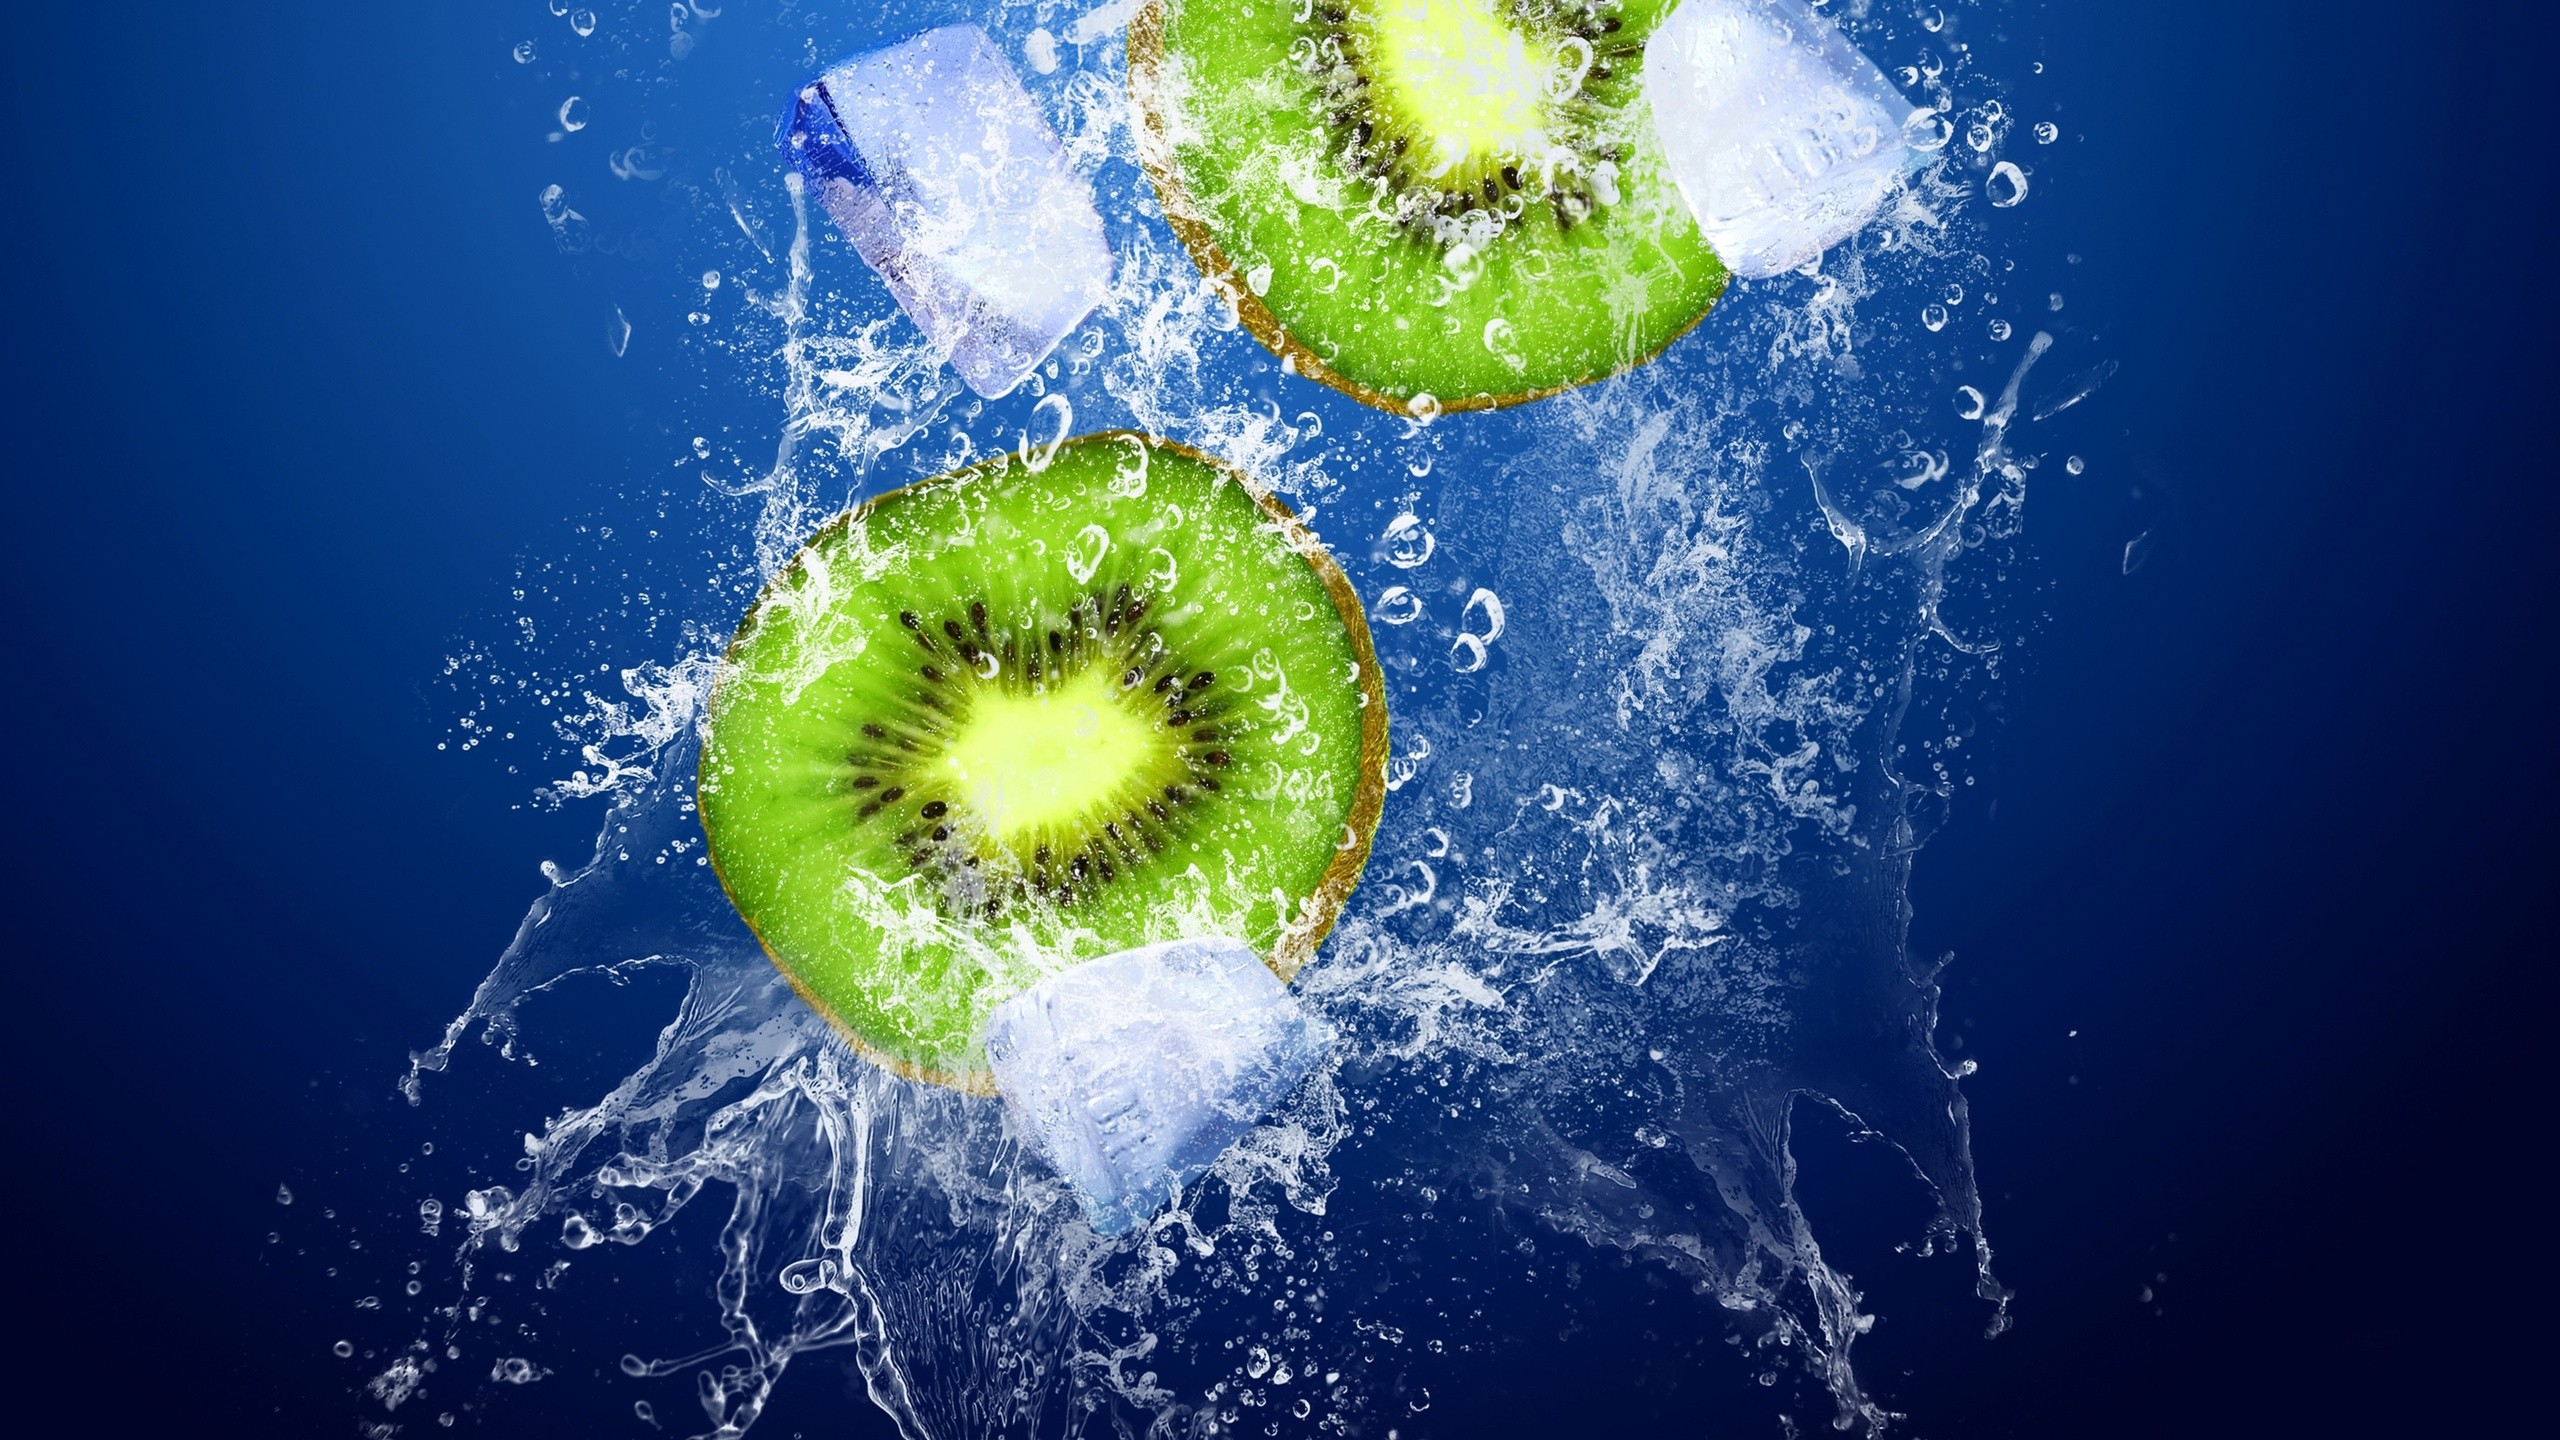 Fruit Water Splashes Kiwi Fruit 2560x1440